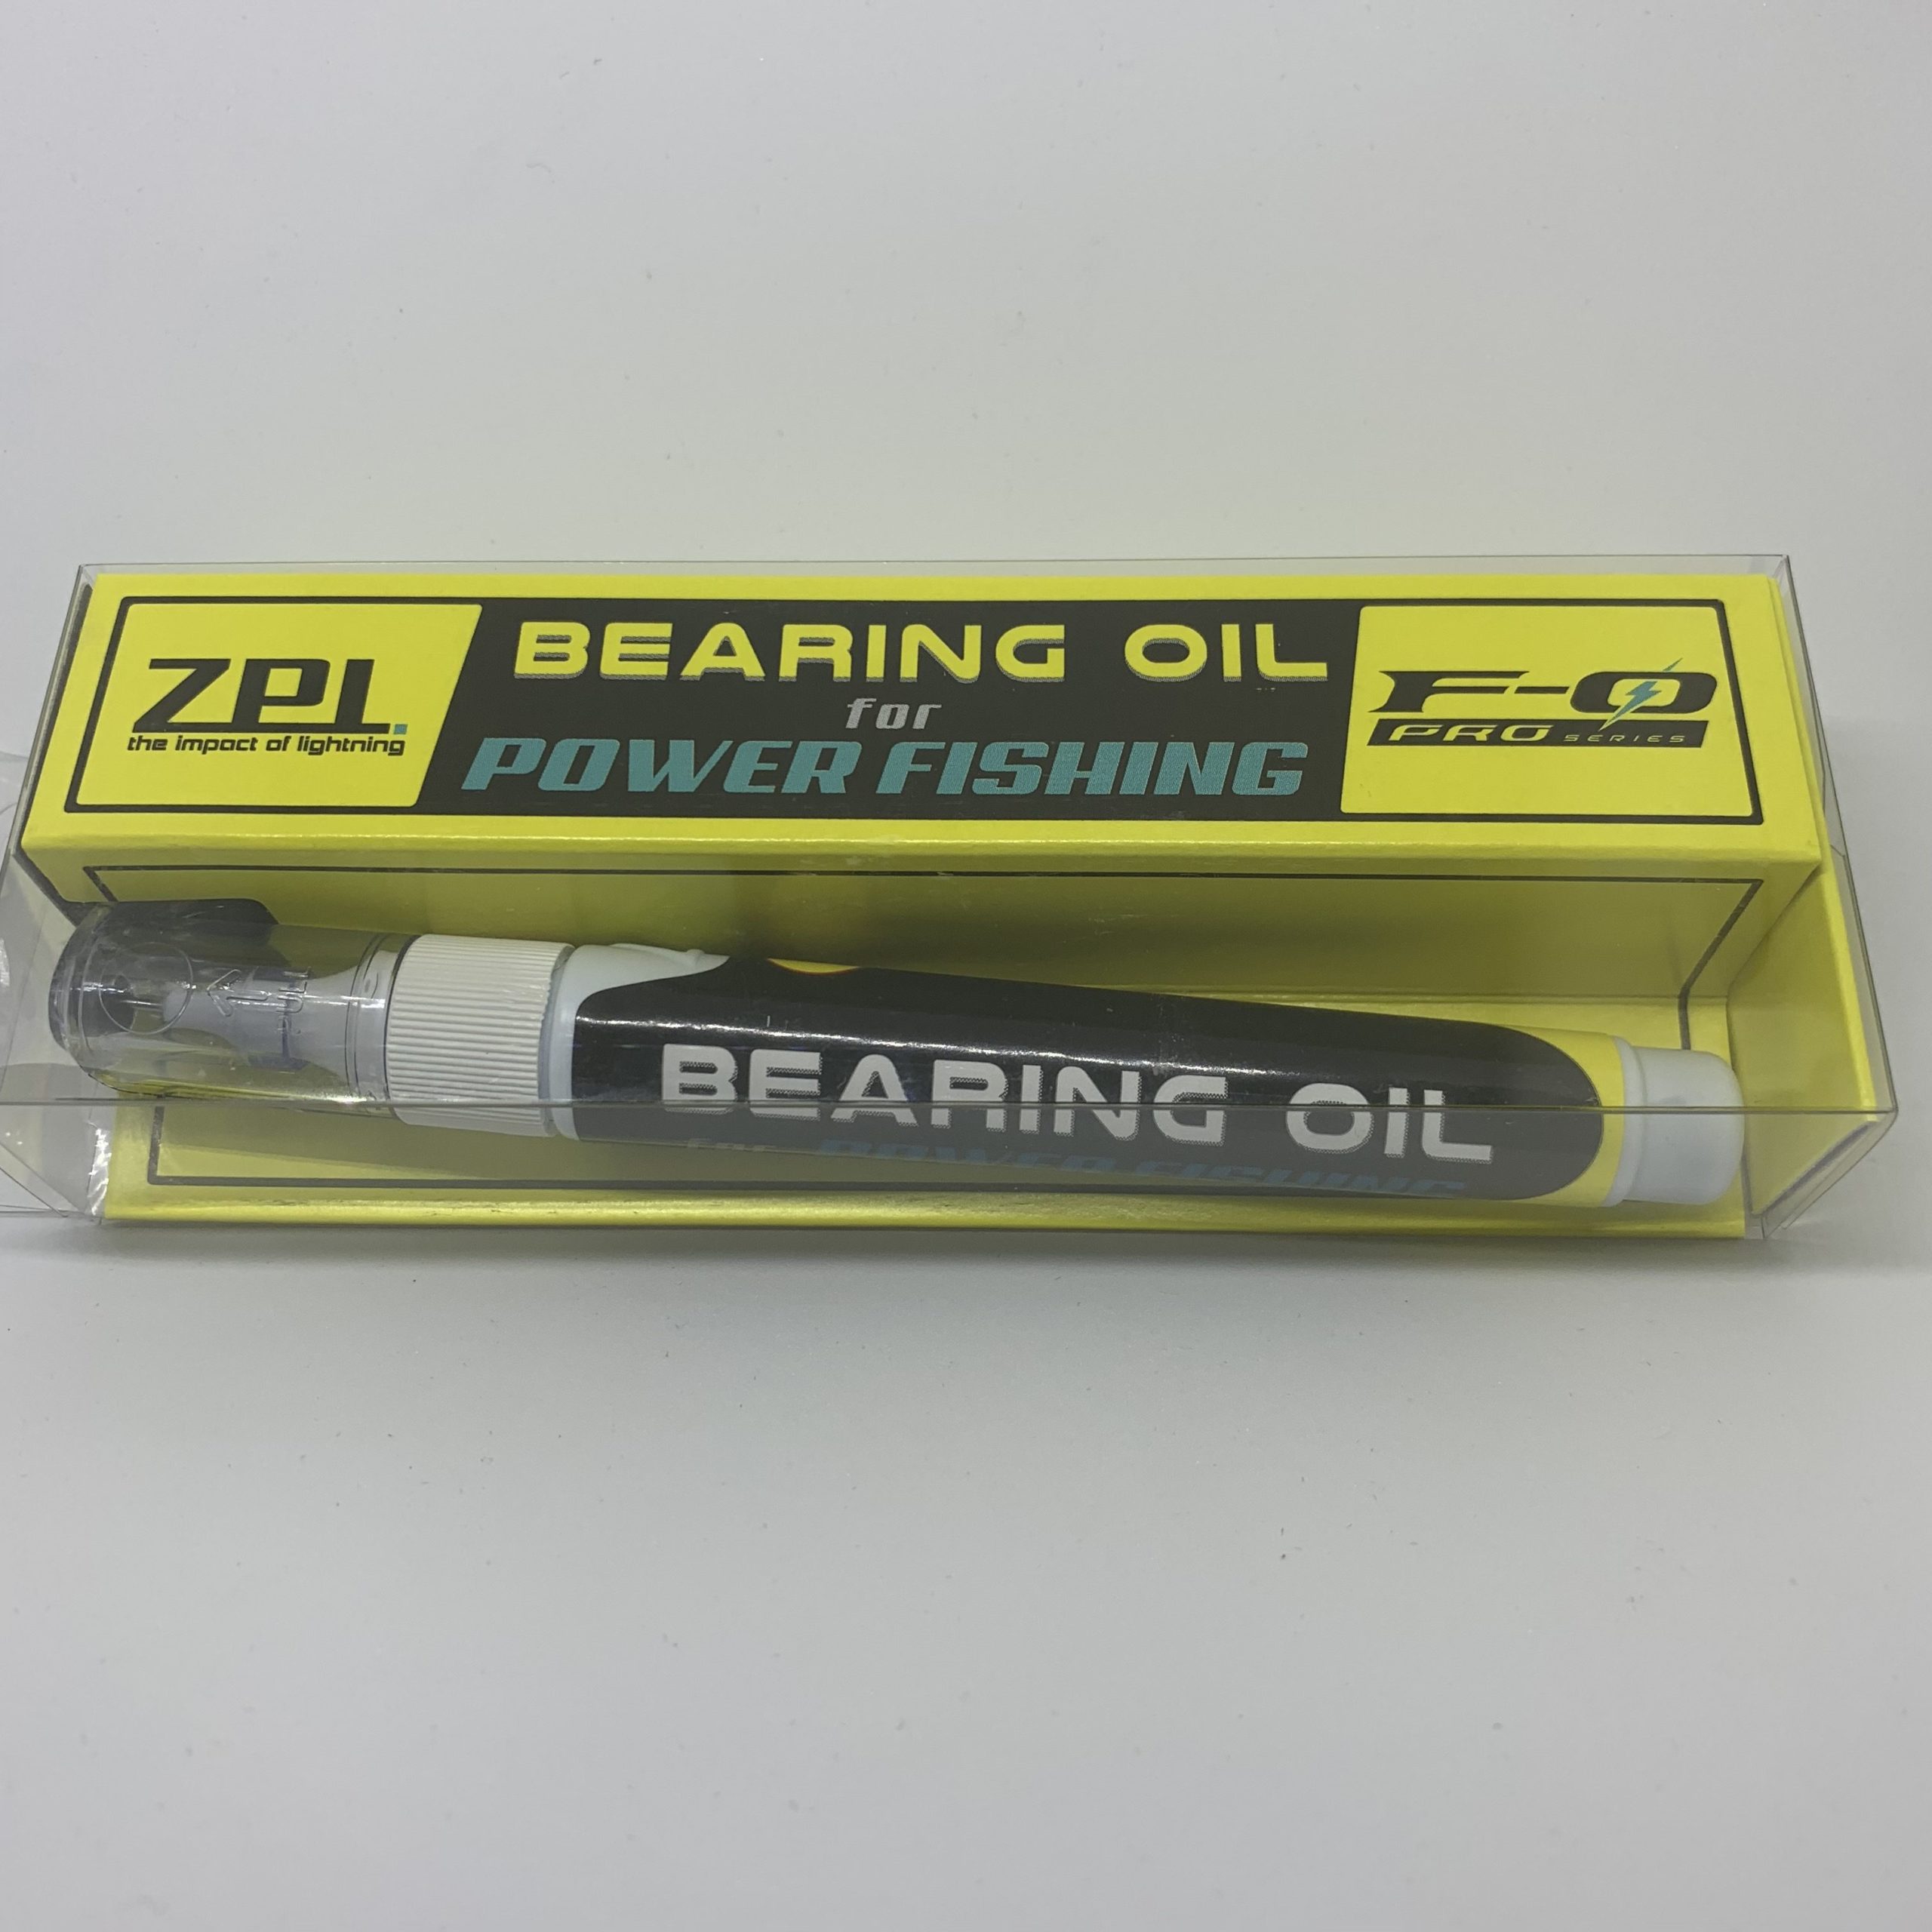  F-0 BEARING OIL for POWER FISHING ZPI